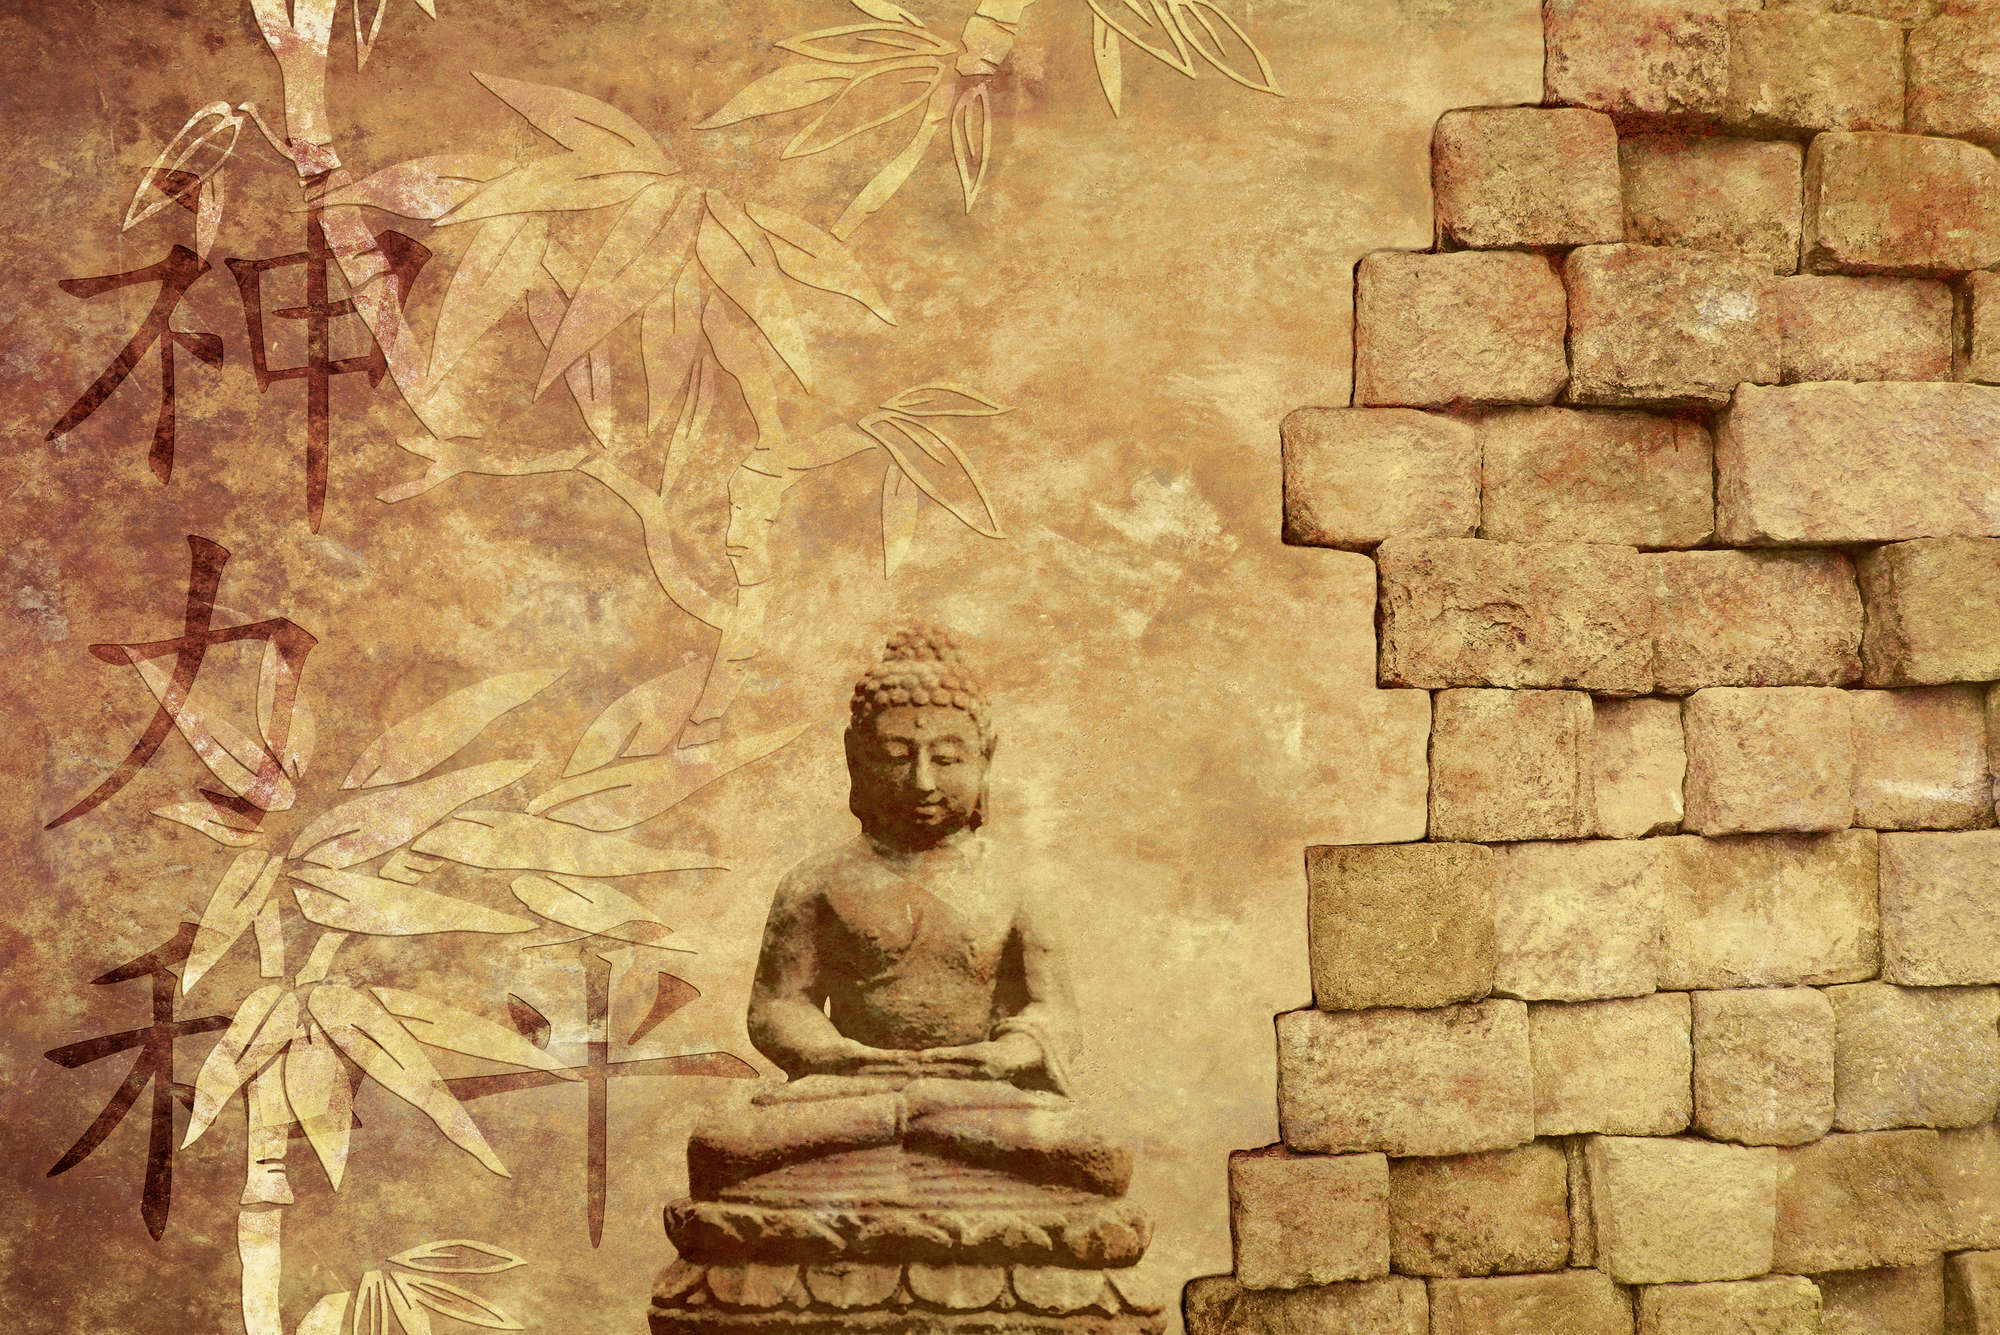             Digital behang met Boeddha figuur - Getextureerd vlies
        